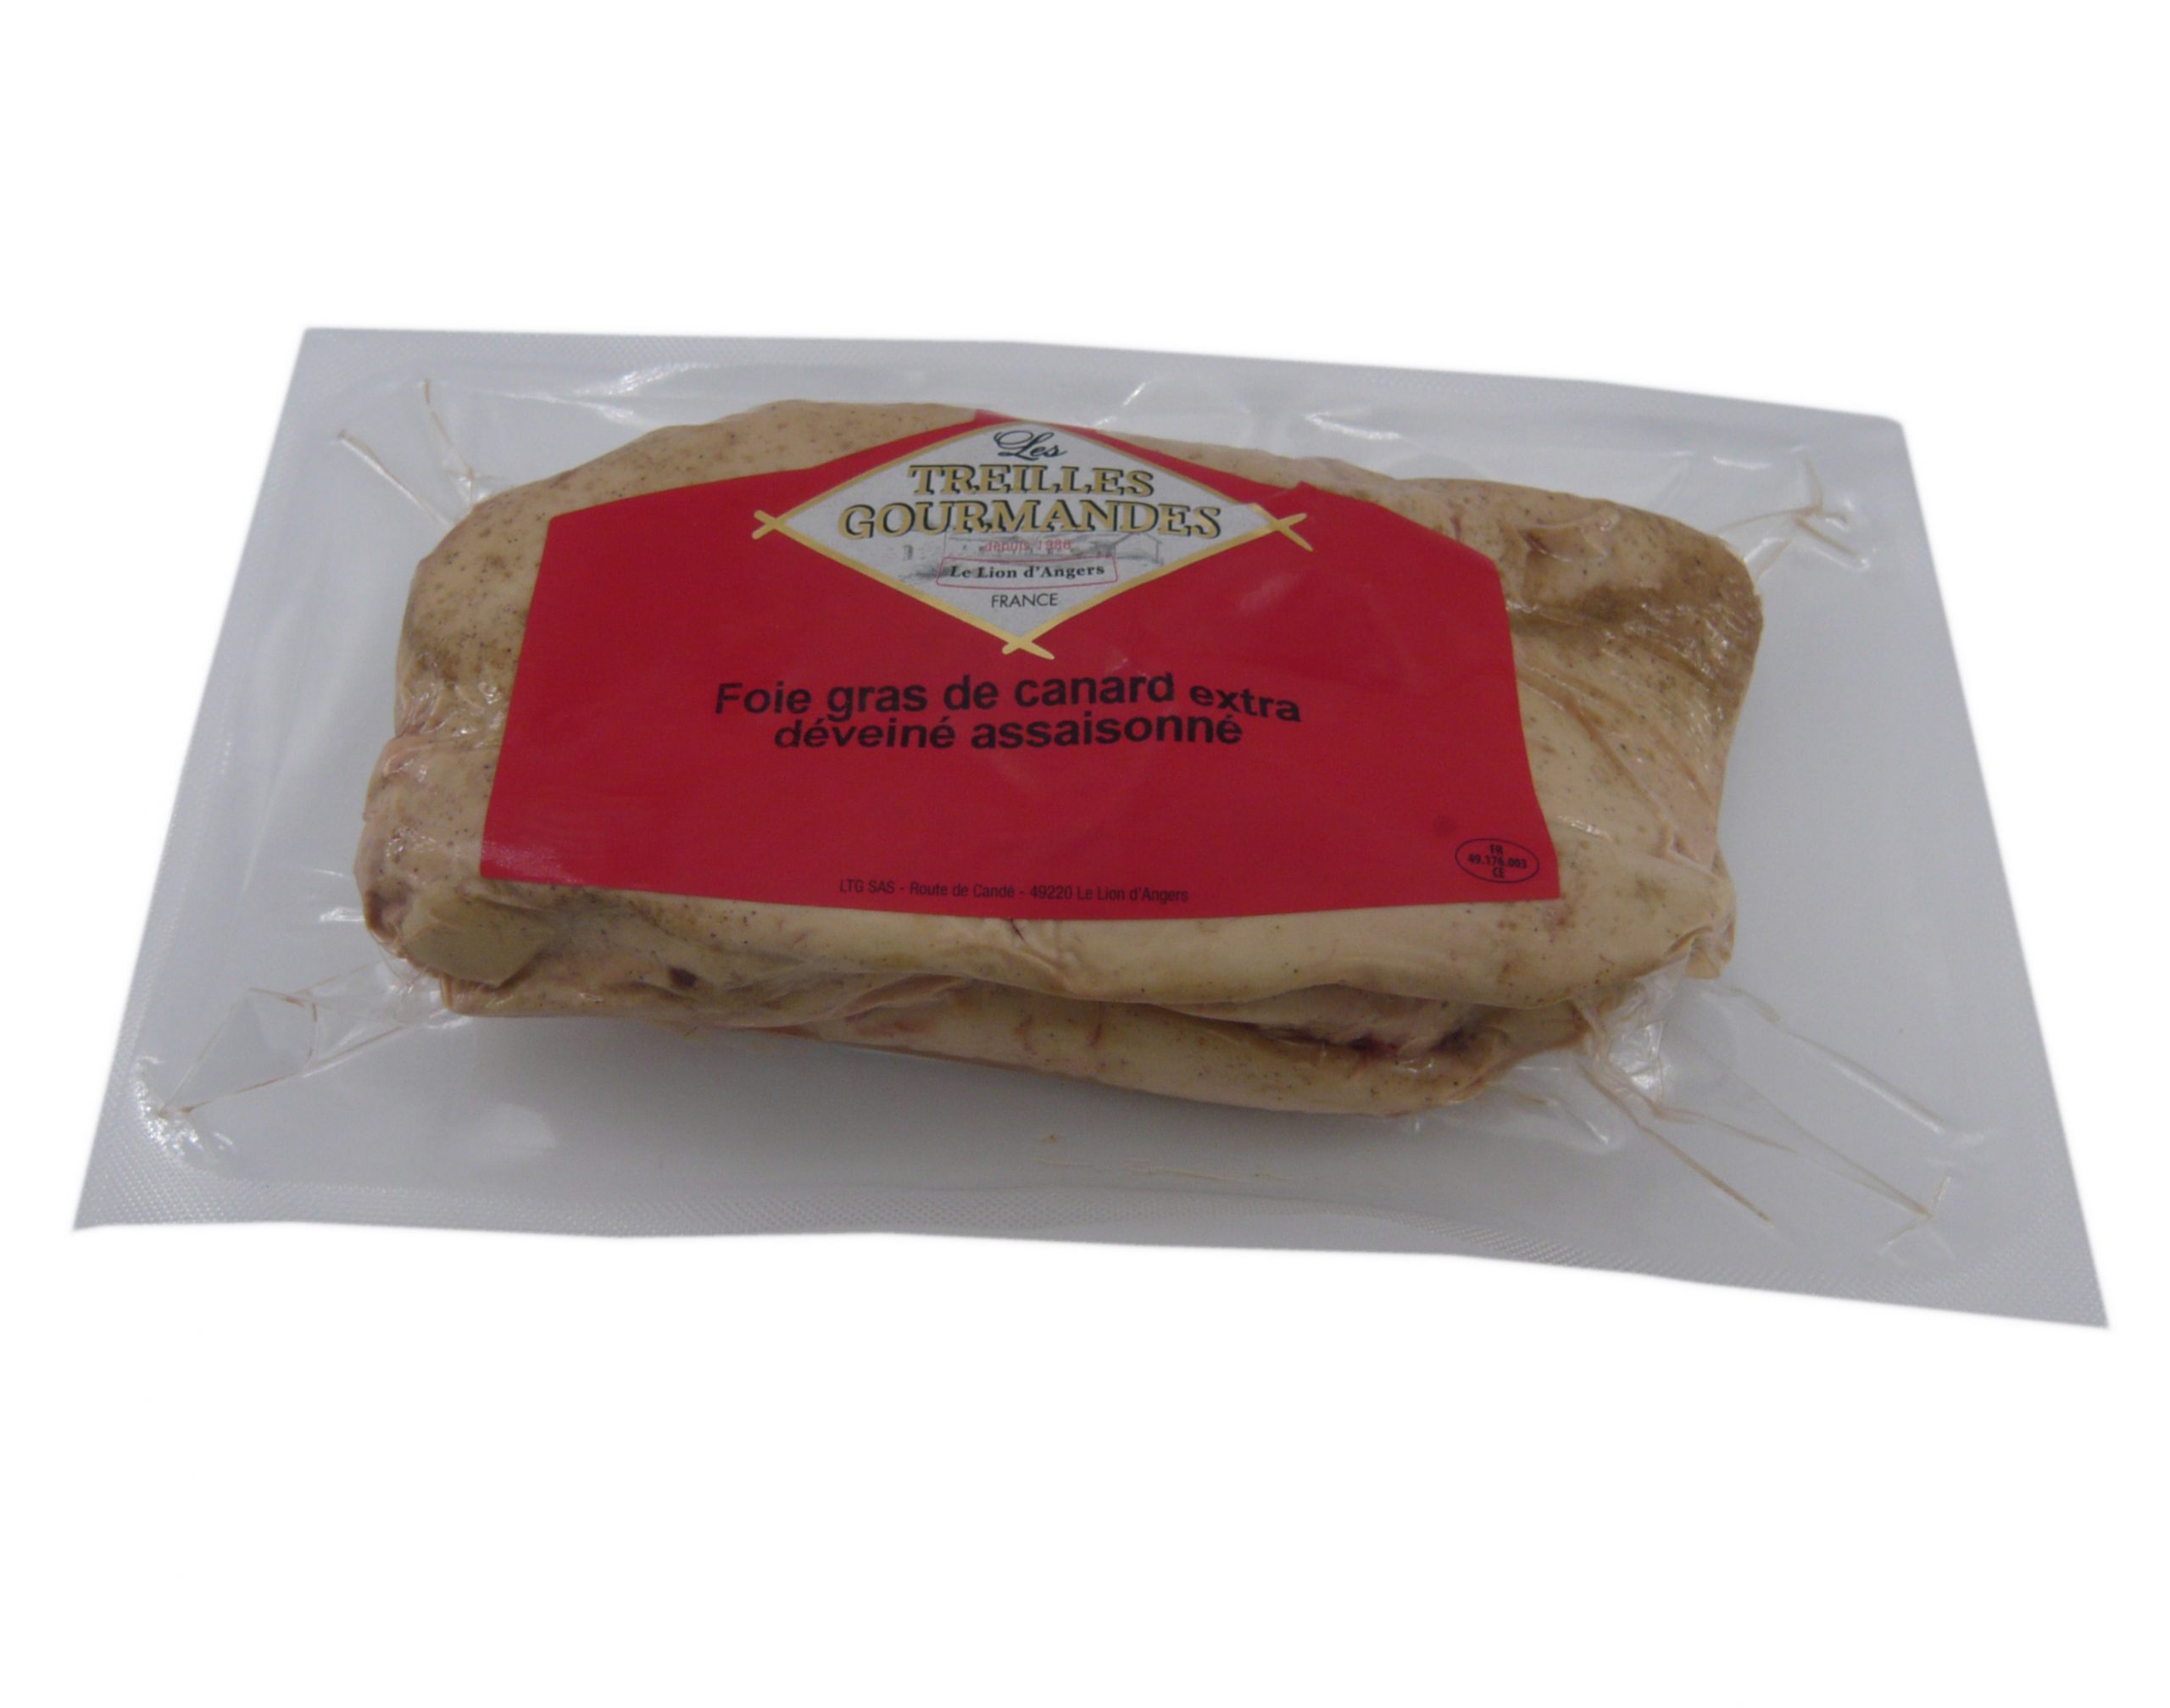 Promo Foie gras de canard cru surgele Qualite Extra chez E.Leclerc